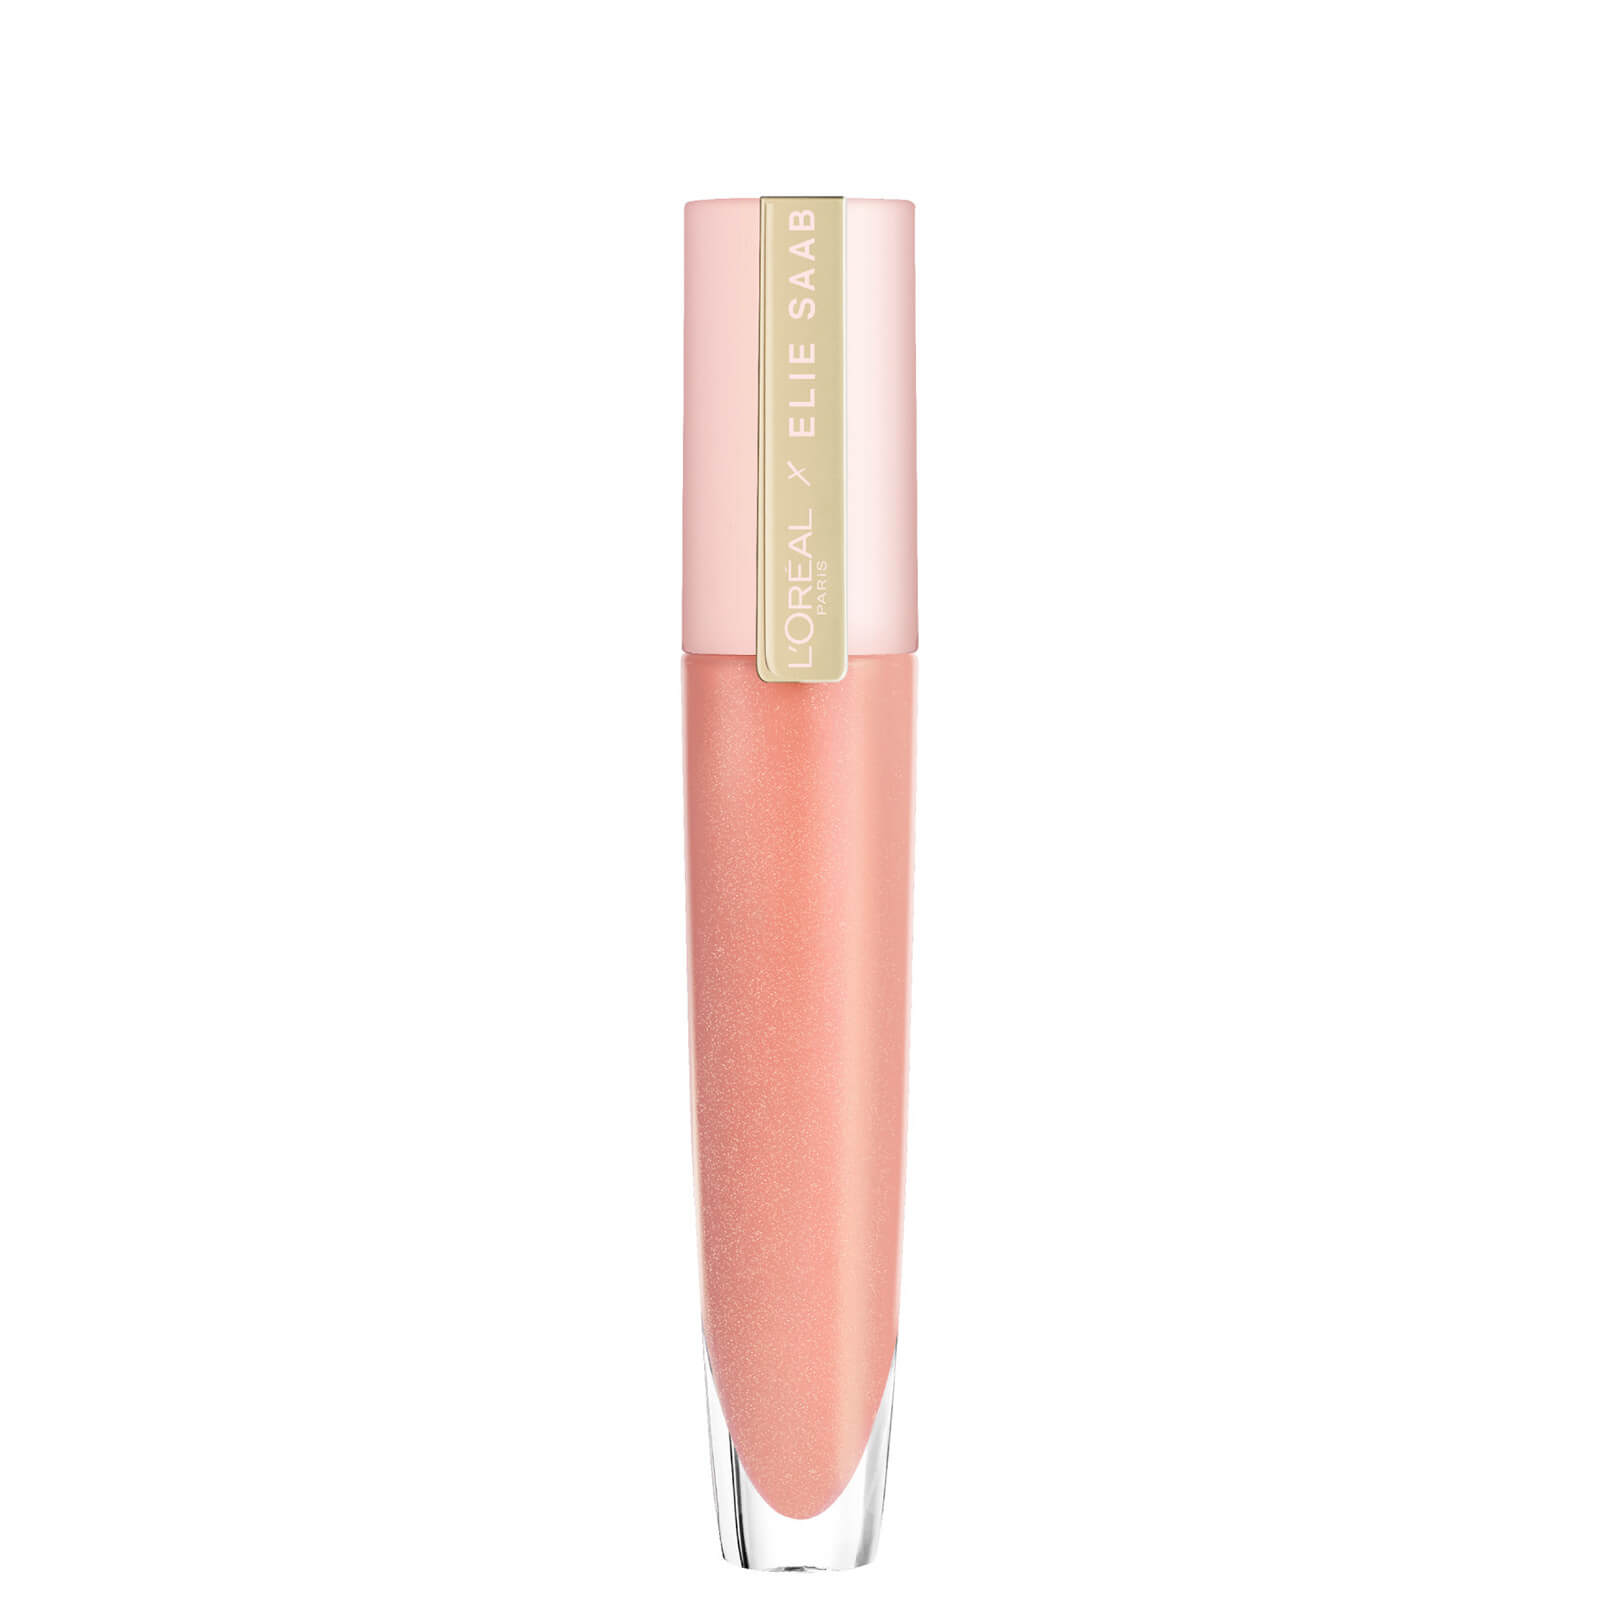 L'Oreal Paris X Elie Saab Bridal Collection Sheer Nude Lip Gloss 7ml (Various Shades) - 02 Amber Choc